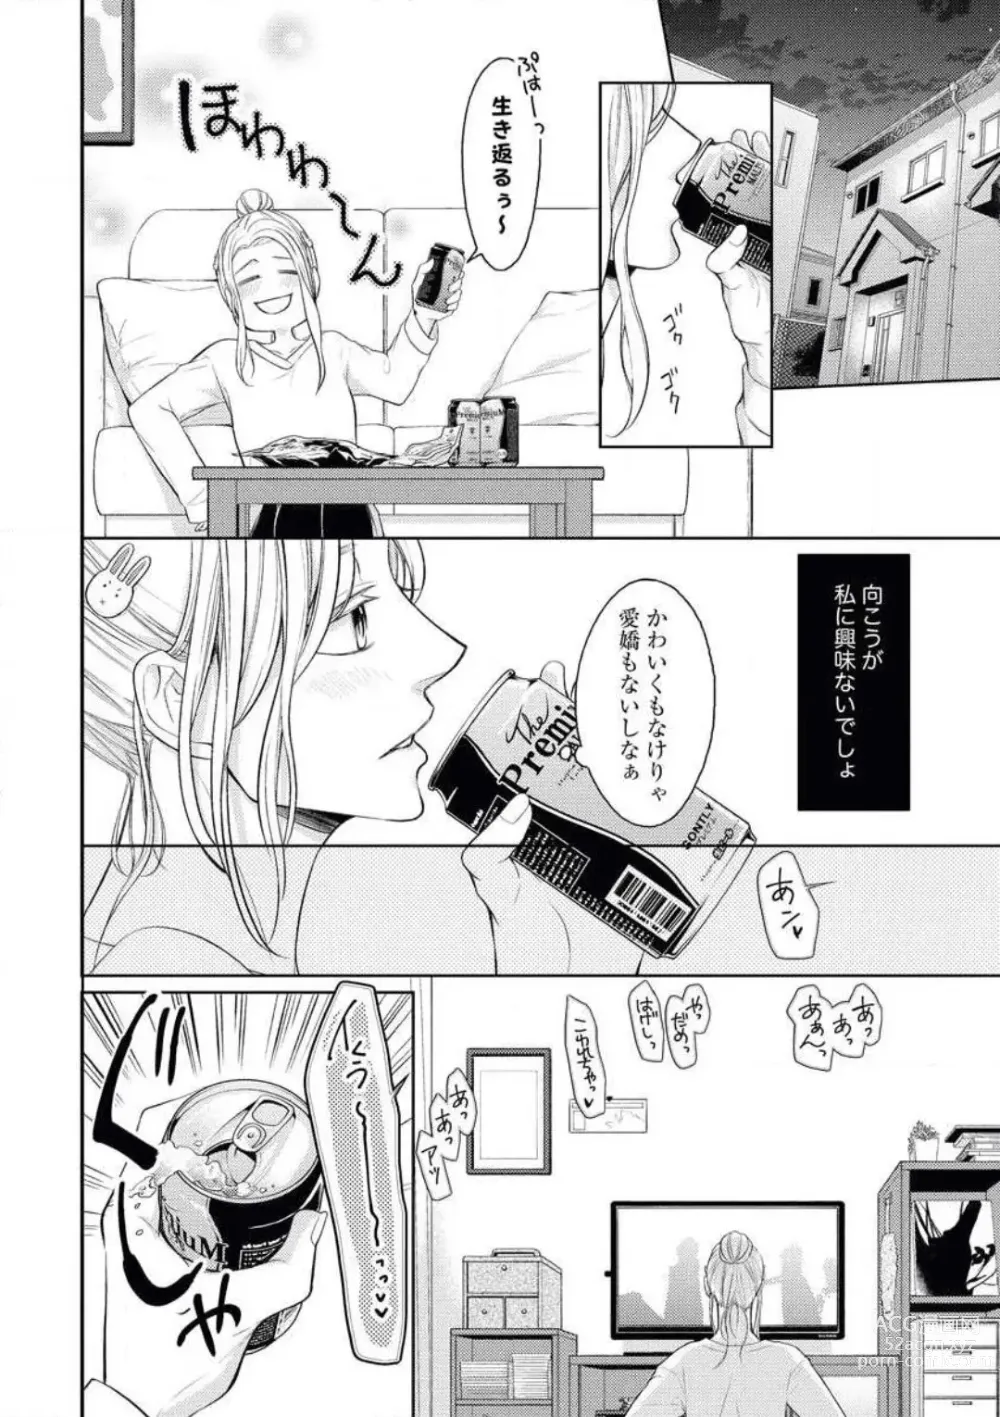 Page 4 of manga Mitsu Koi Maisonette